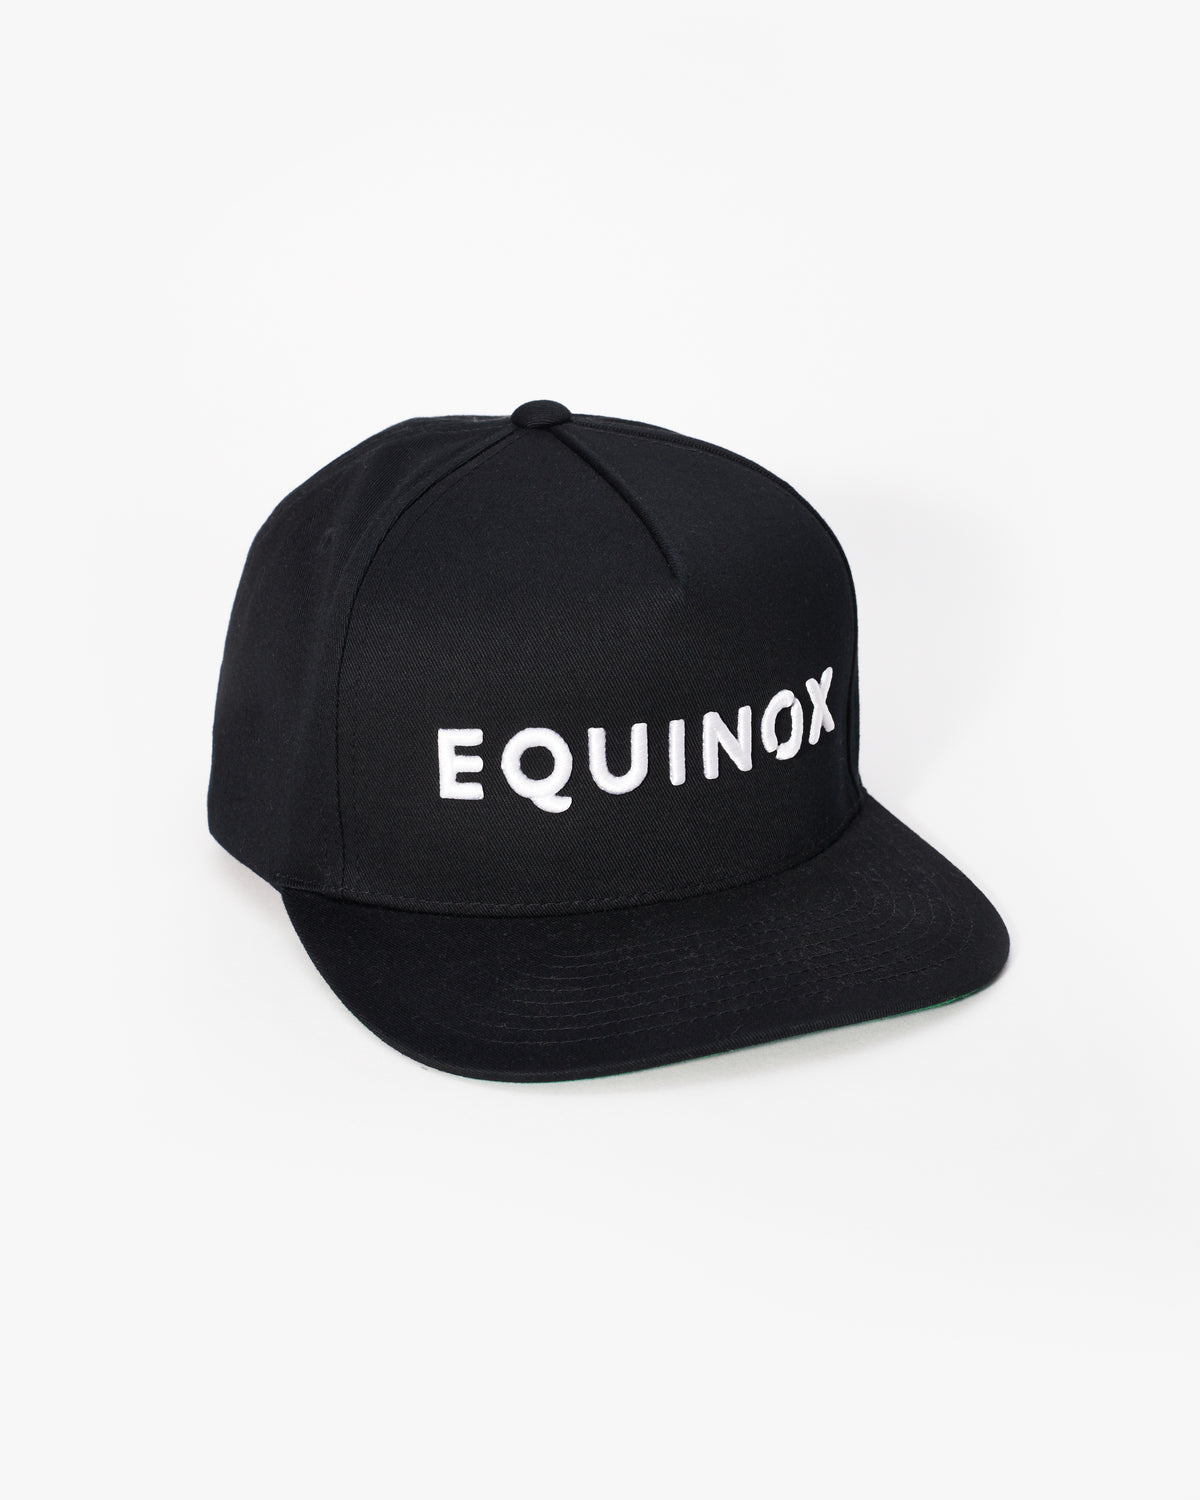 Equinox Snapback Flat Brim Hat – Shop Equinox The at